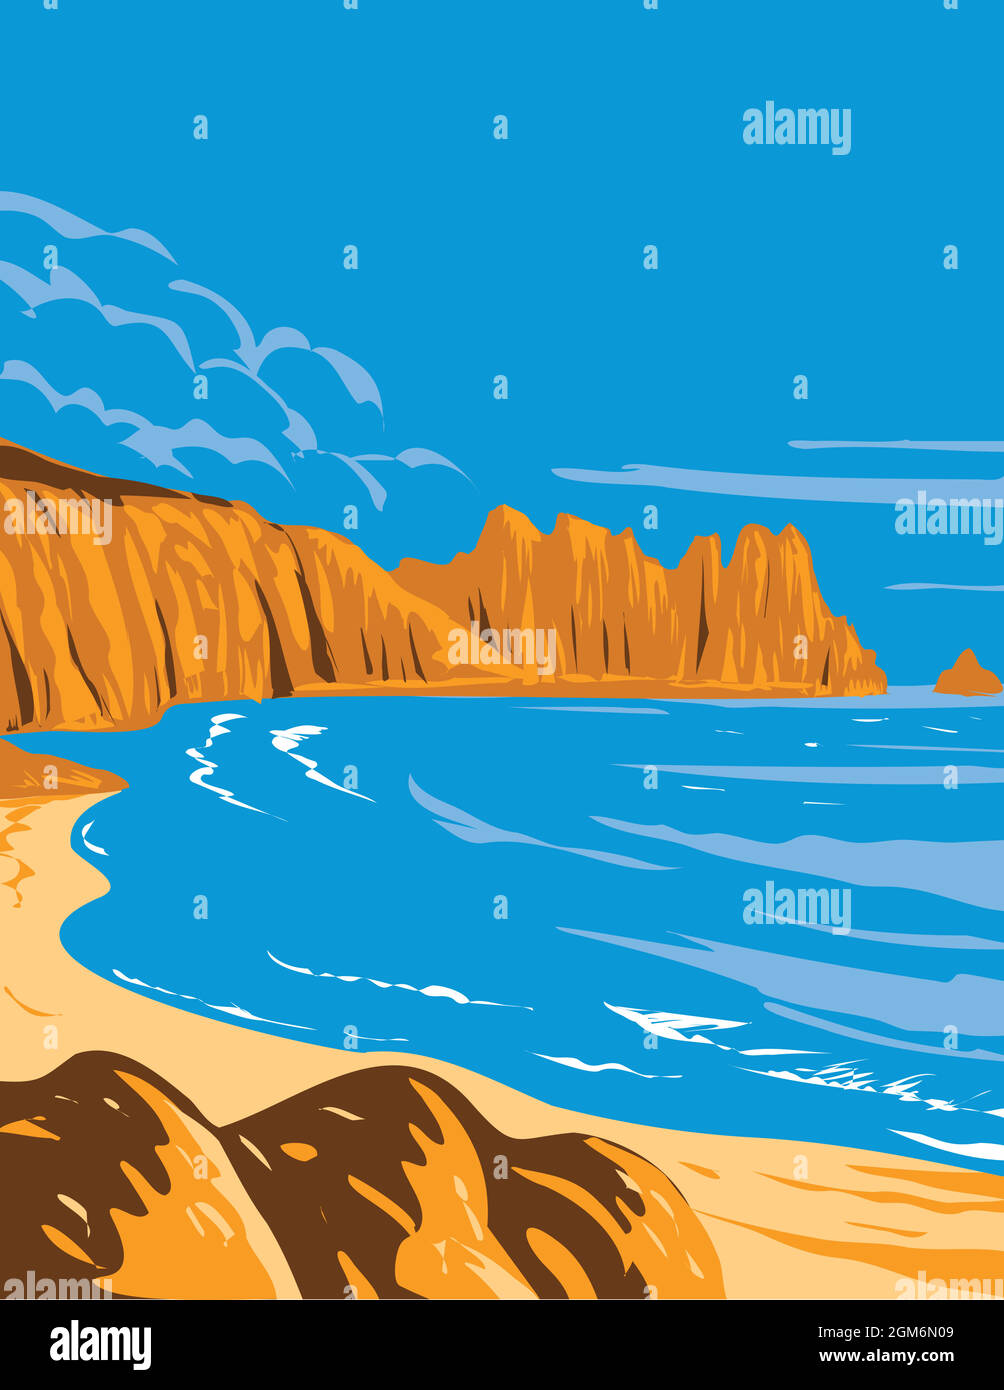 Affiche Art Déco ou WPA de Logan Rock sur Treen Cliff à Cornwall, Angleterre, Royaume-Uni fait dans le style d'administration de projet de travaux. Illustration de Vecteur